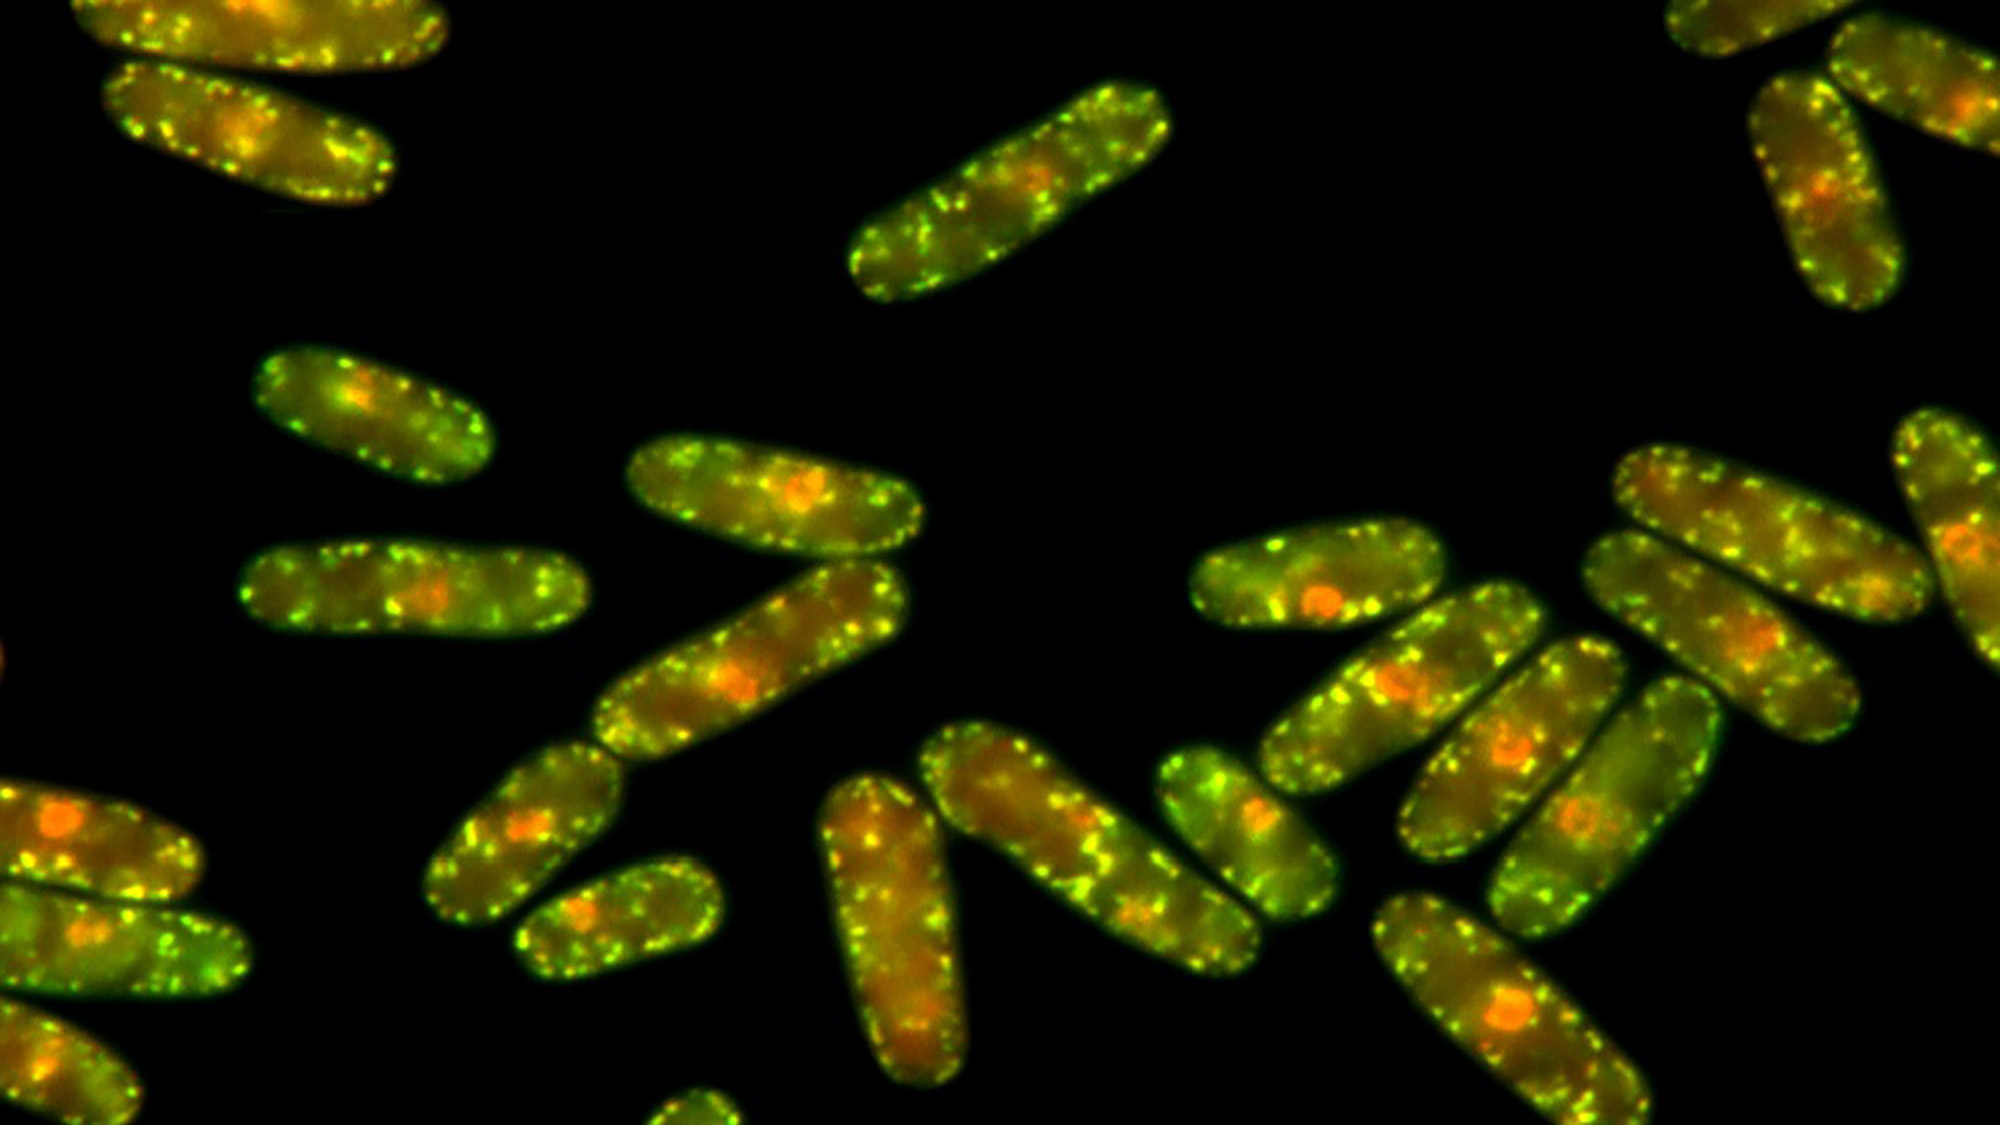 Agregats proteics que apareixen en llevats Schizosaccharomyces pombe exposats a elevades temperatures. | Imatge de Margarita Cabrera.